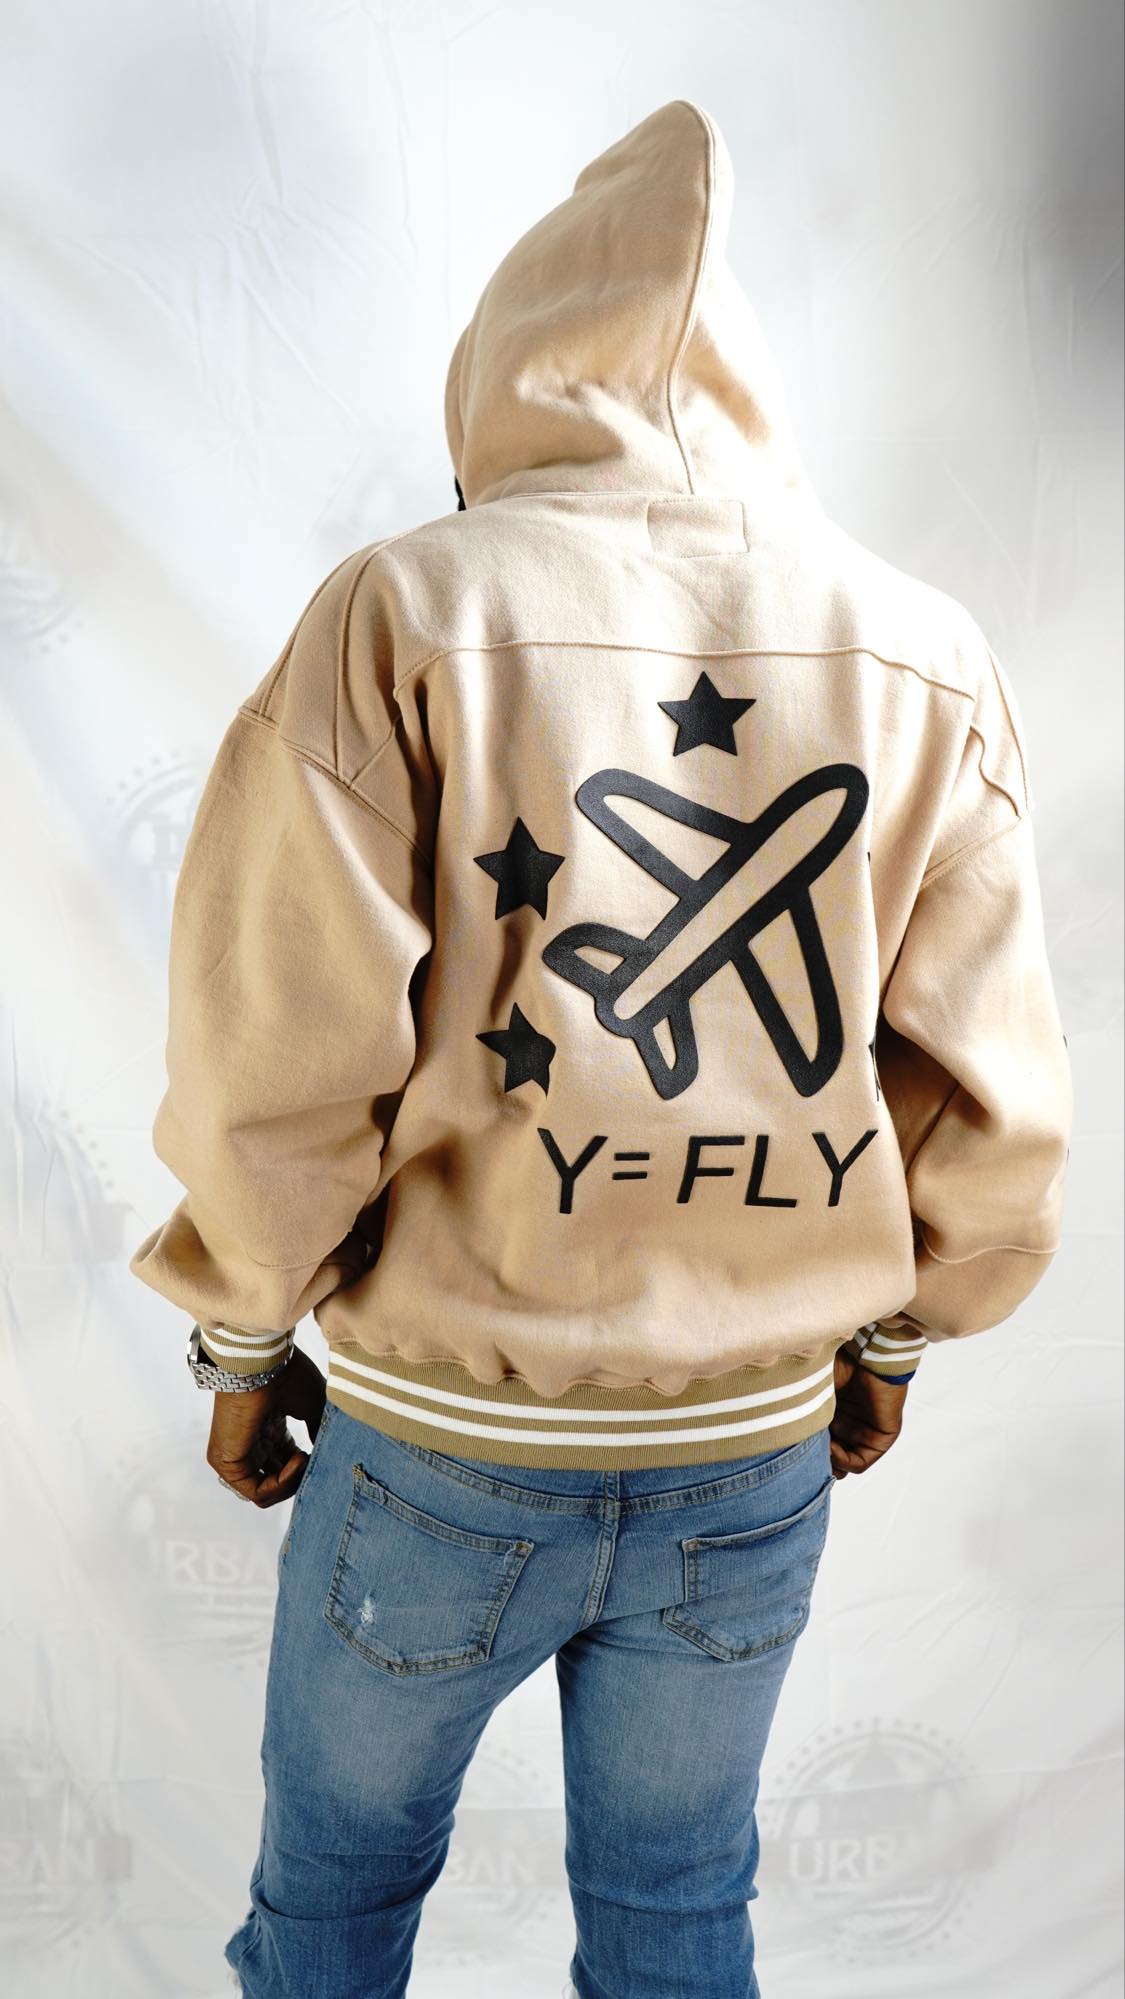 Y=FLY Airplane logo hoodie